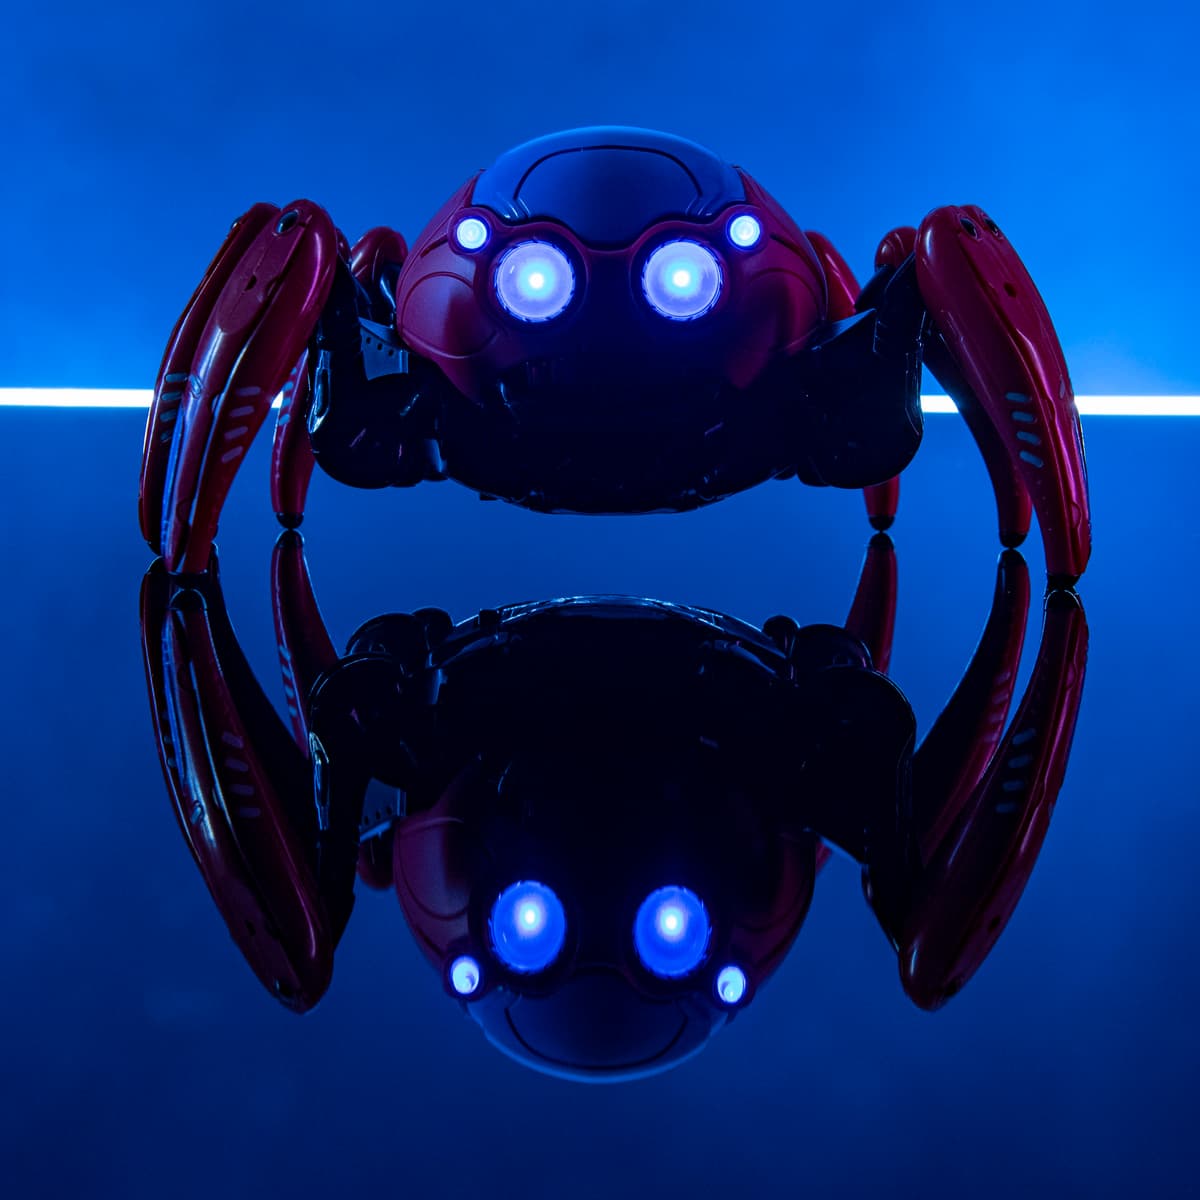 spider-bots